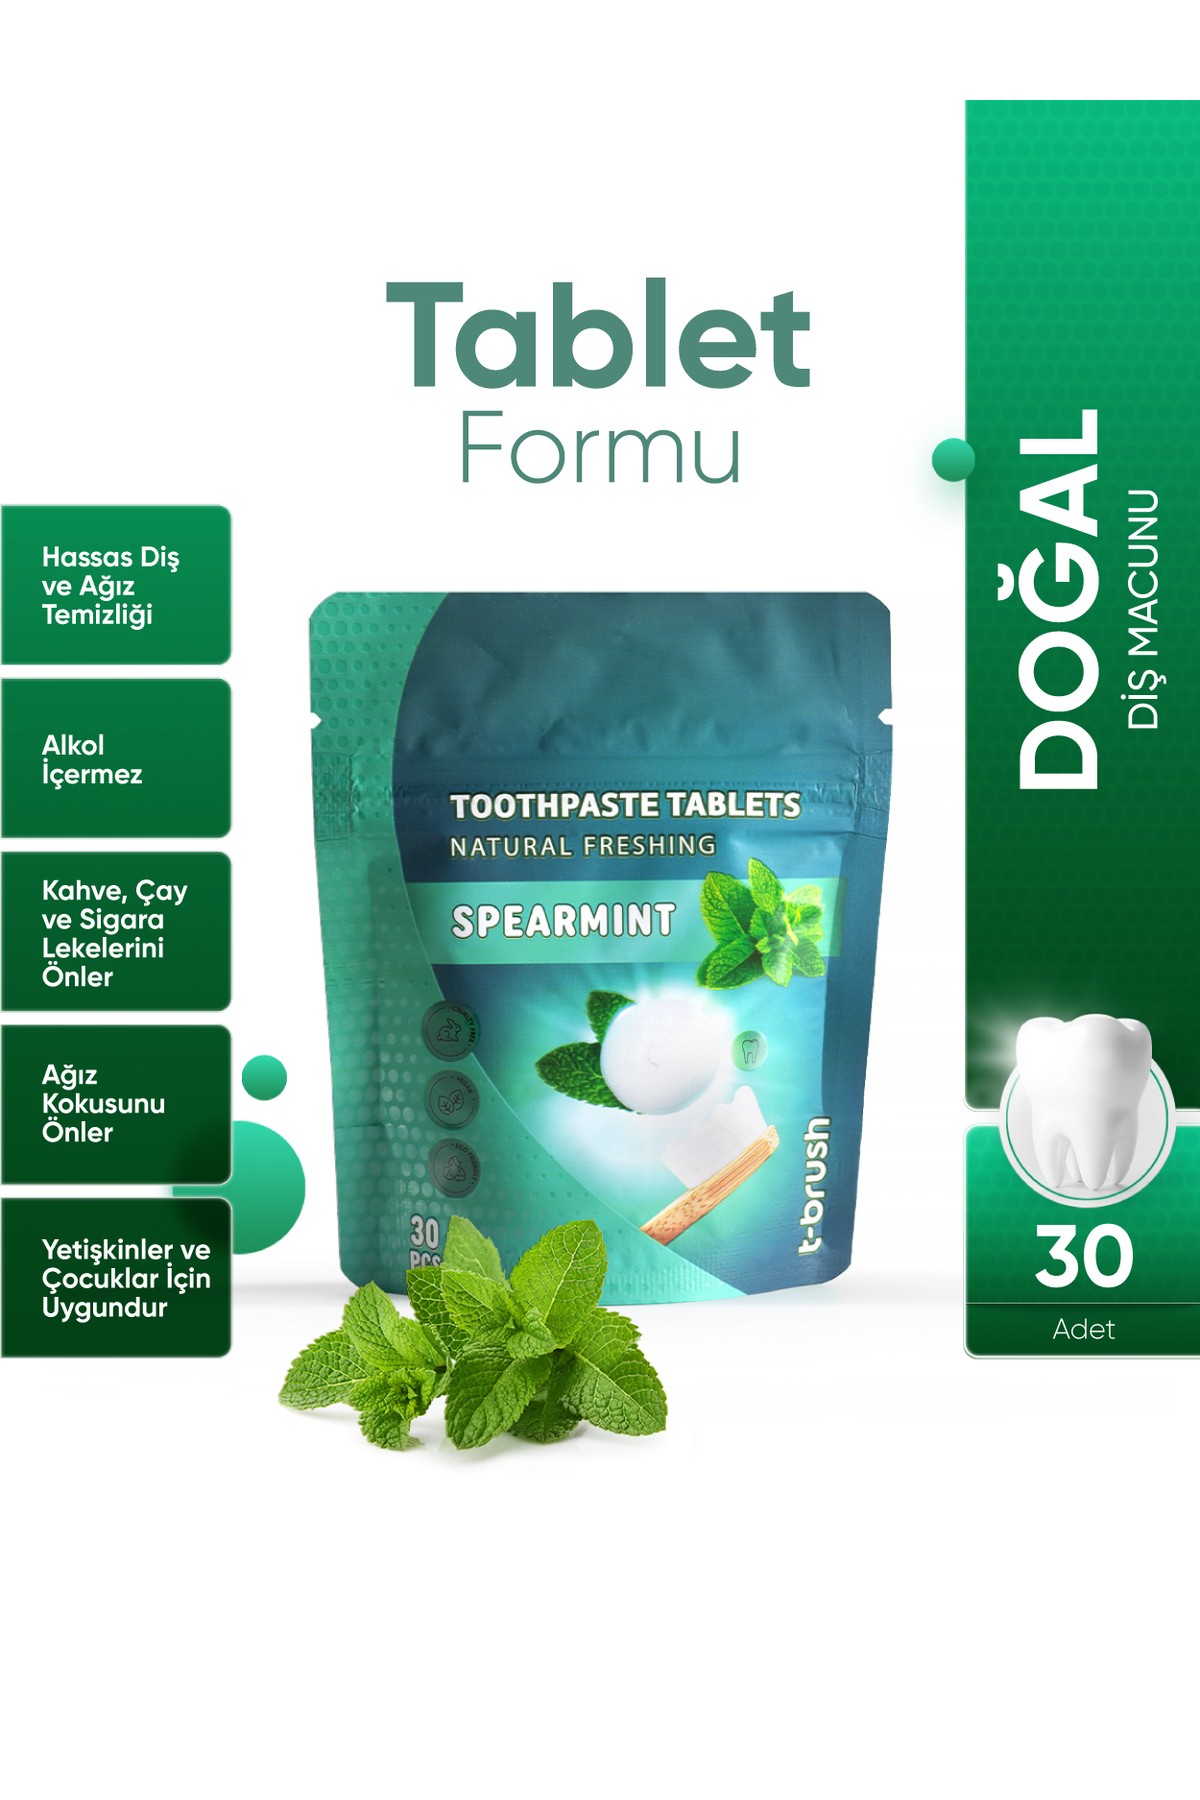 Koruyucu Ve Ferahlatıcı Ağız Çalkalama Tableti 30 Tablet -  Ağız Kokusu Önleyici Mentol ve Nane Aromalı Pastil - Nane Aromalı Diş Macunu Tableti - 30 Tablet